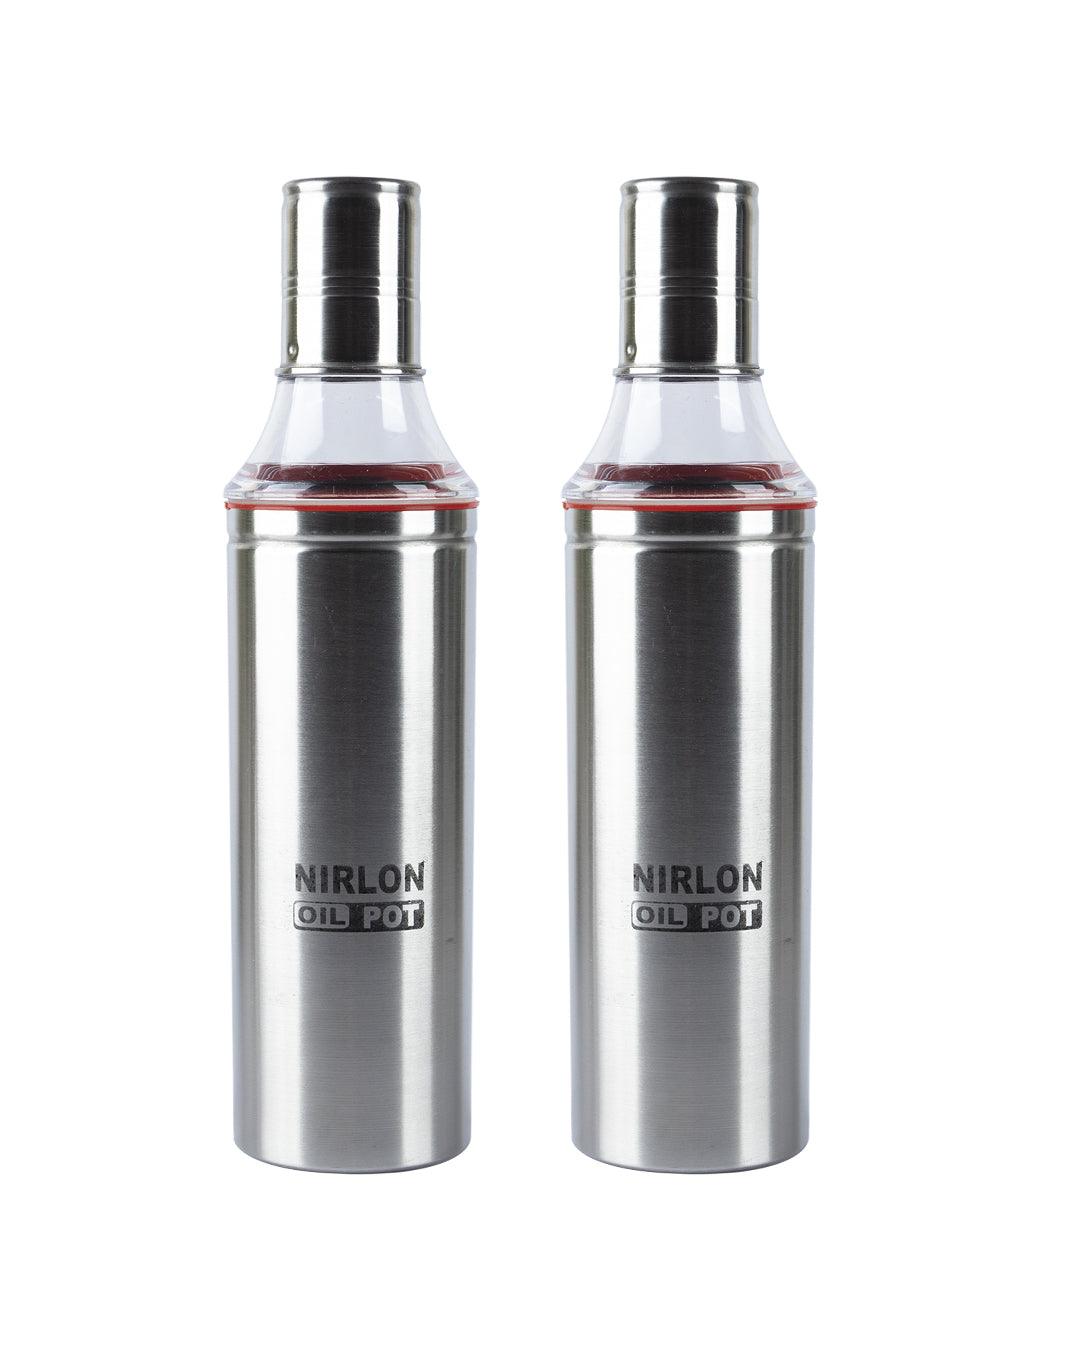 Market 99 Stainless Steel Oil Pourer/Dispenser With Screw Caps (Set Of 2, 1000 mL) - NIRLON - MARKET 99